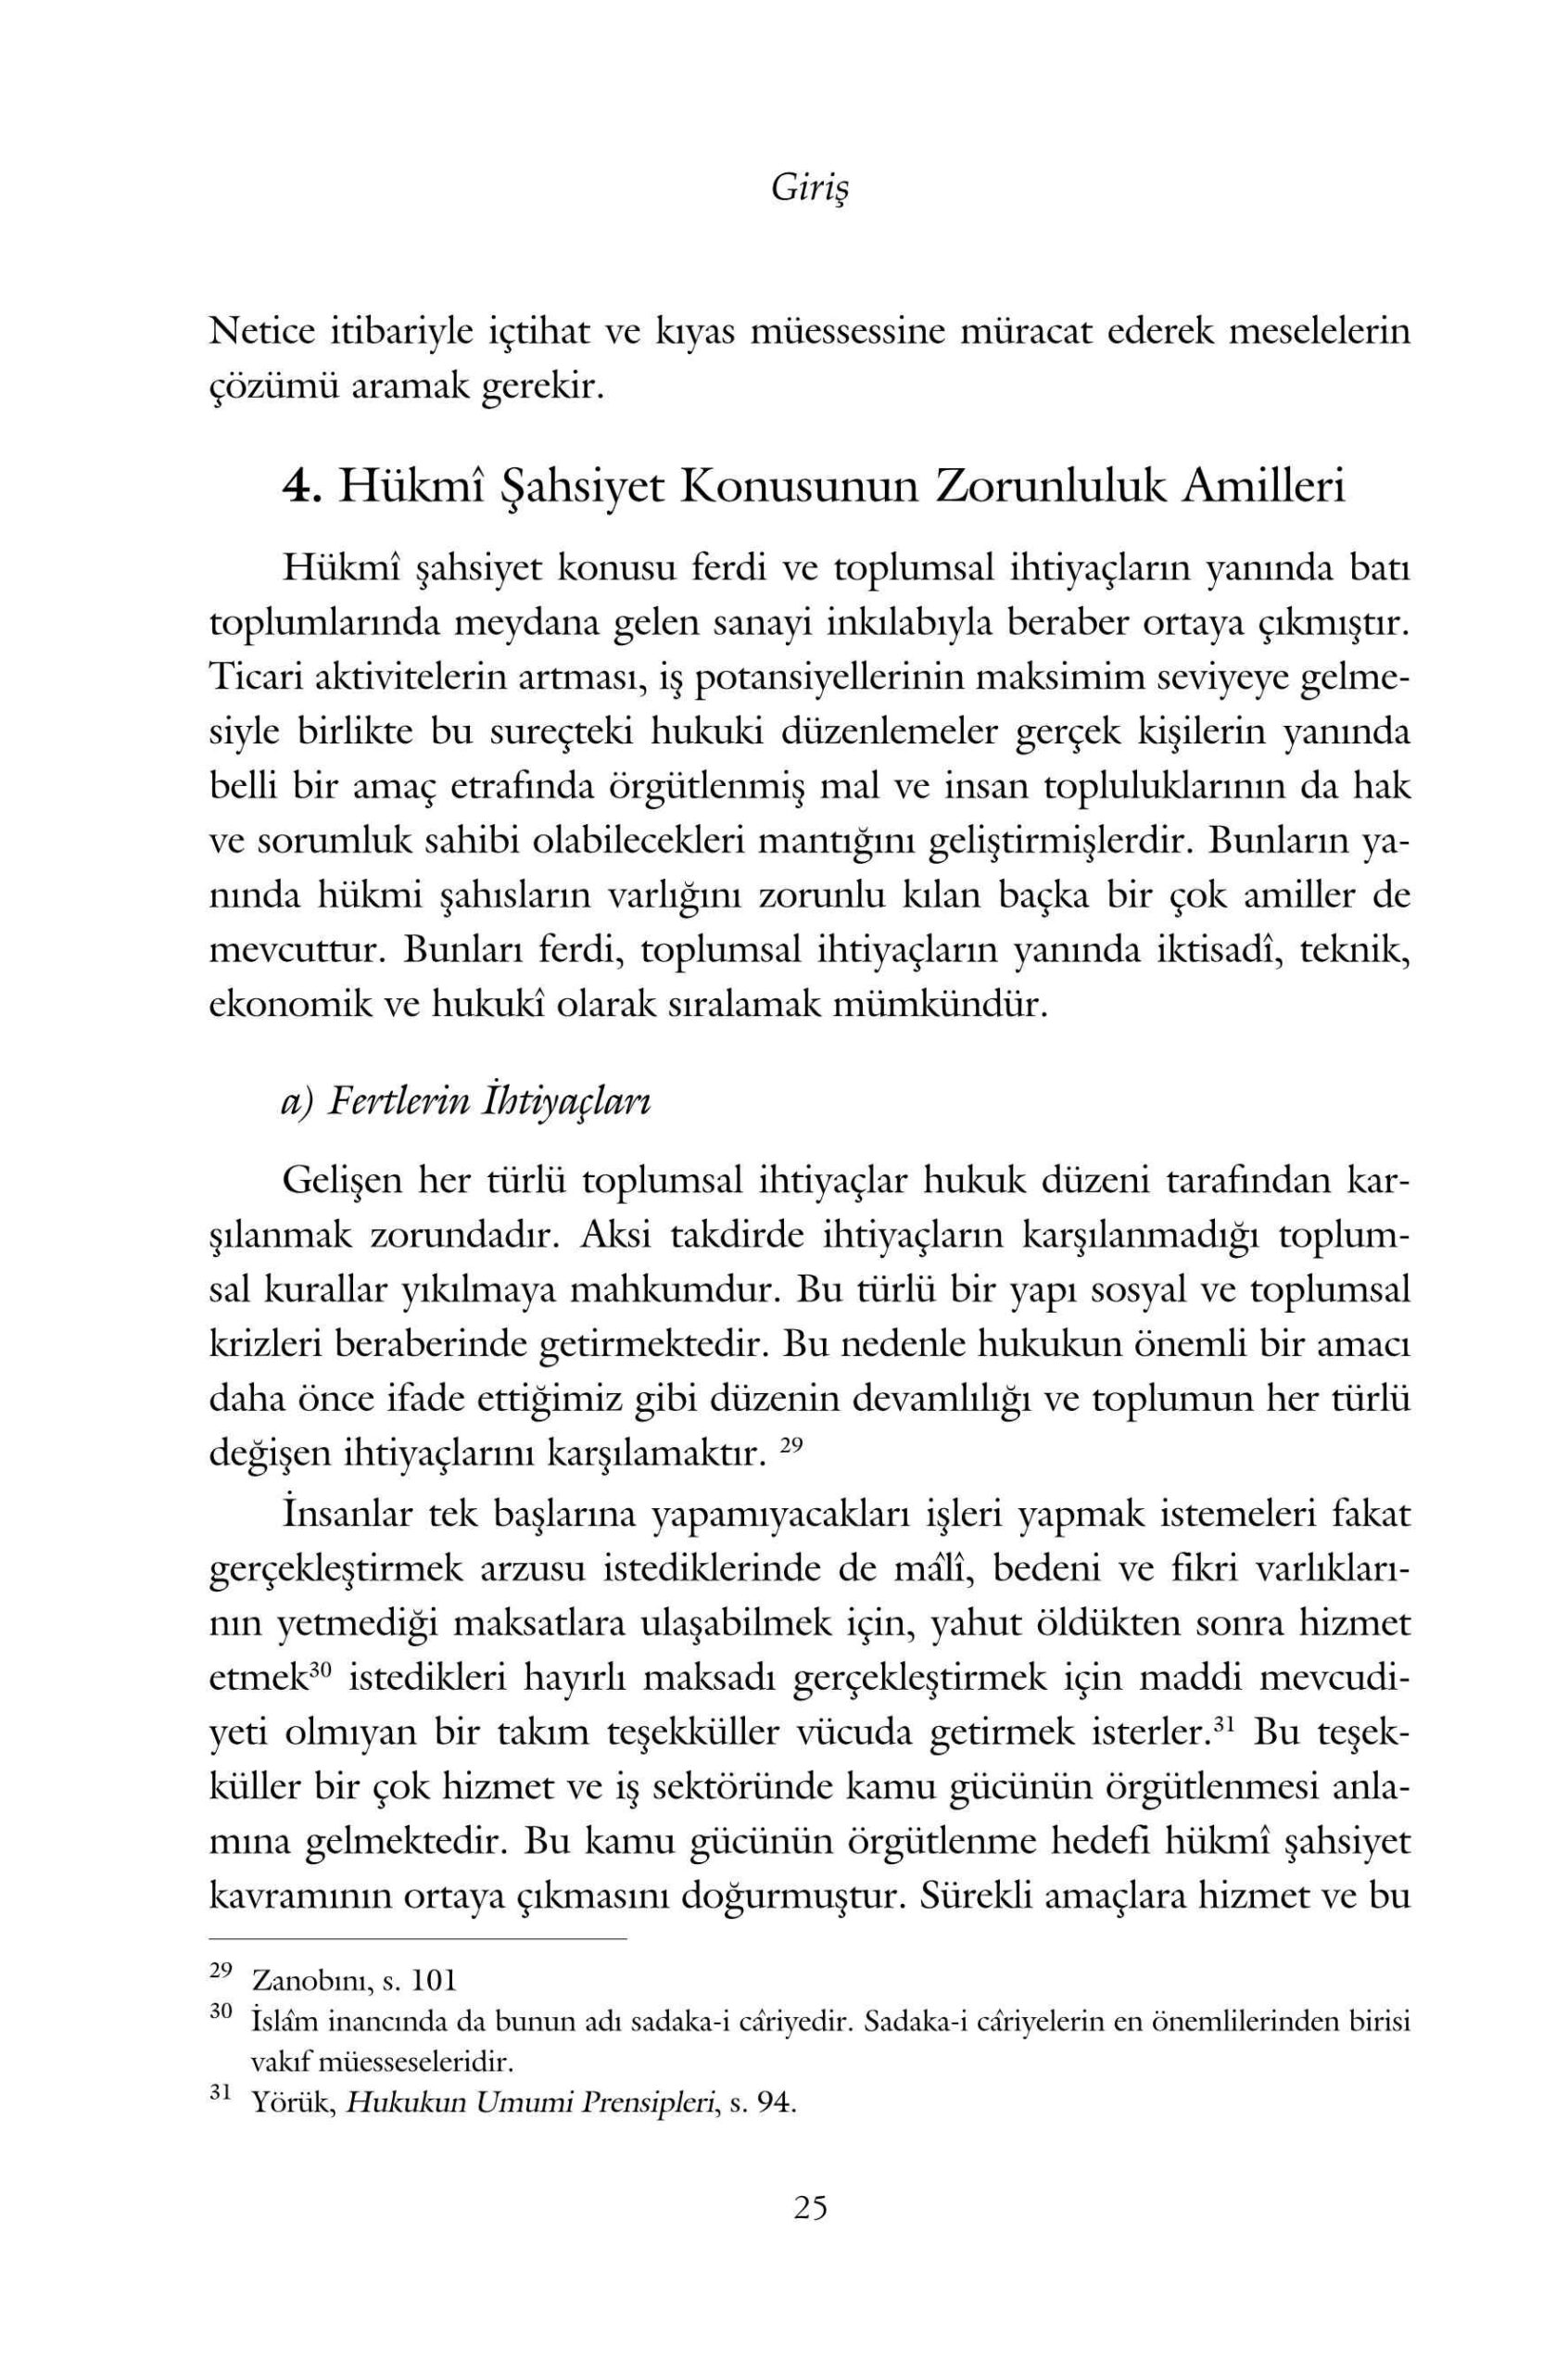 Murtaza Kose - Islam Hukuku Acisindan Hukmi Sahsiyet - IsikAkademiY.pdf, 231-Sayfa 